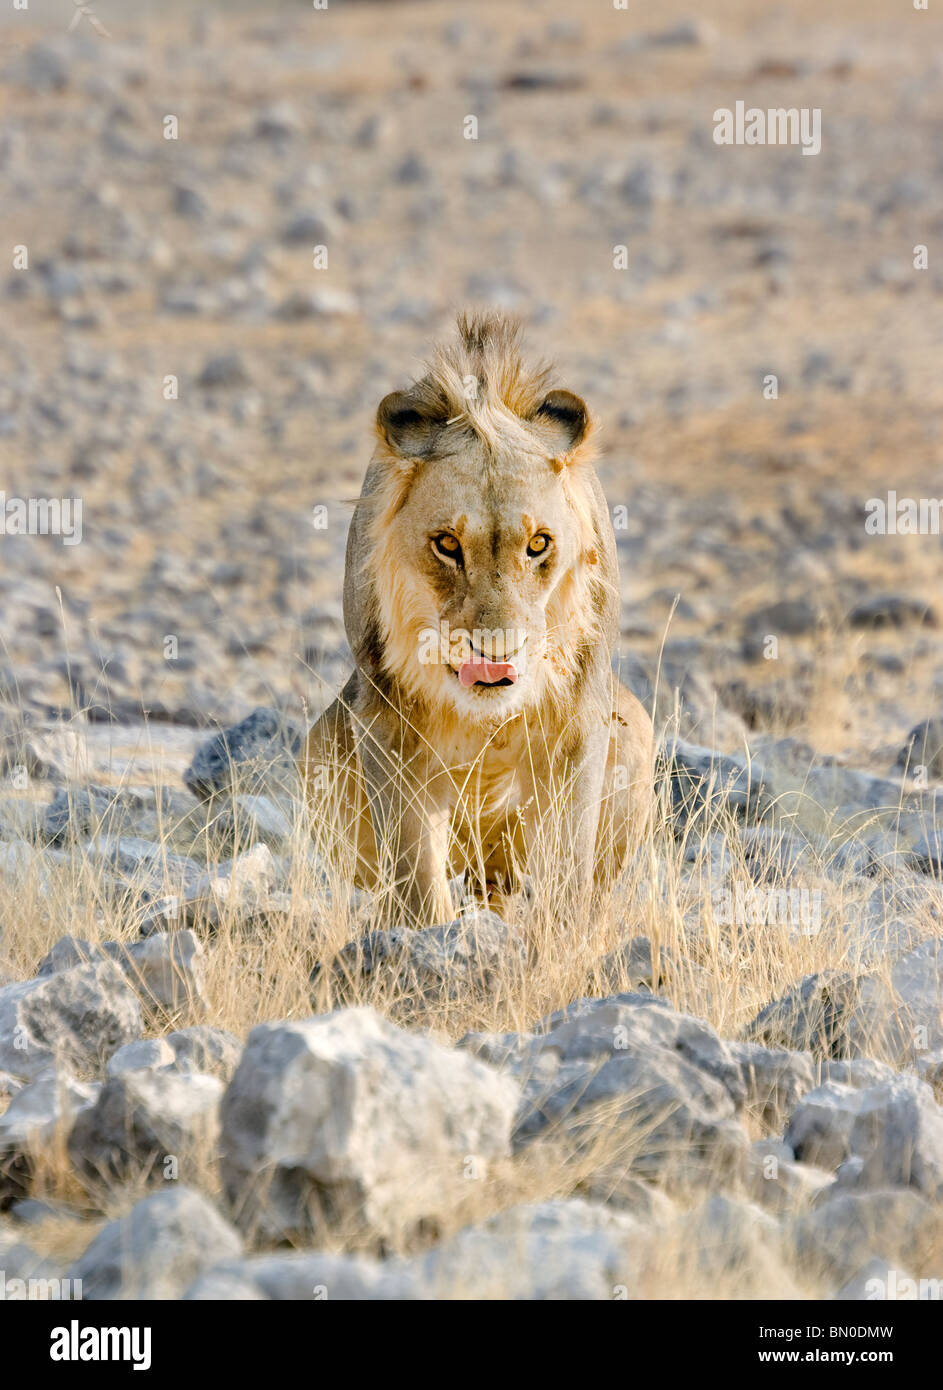 Hungry lion in Etosha National Park, Namibia Stock Photo